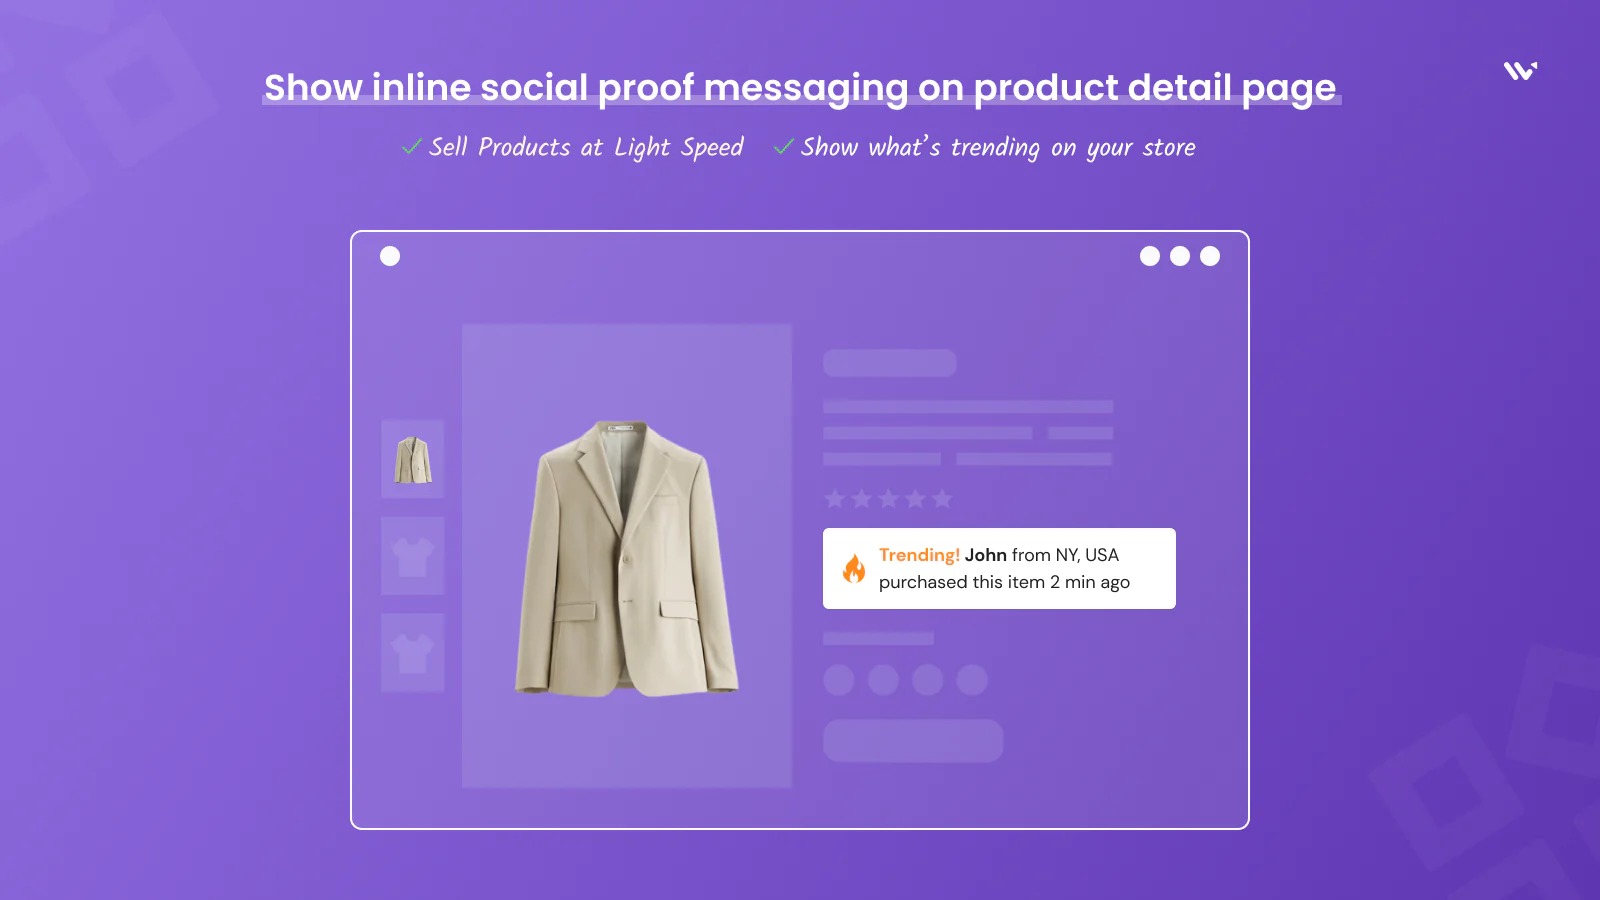 Mostrar mensajes de prueba social en línea en la página del catálogo de productos